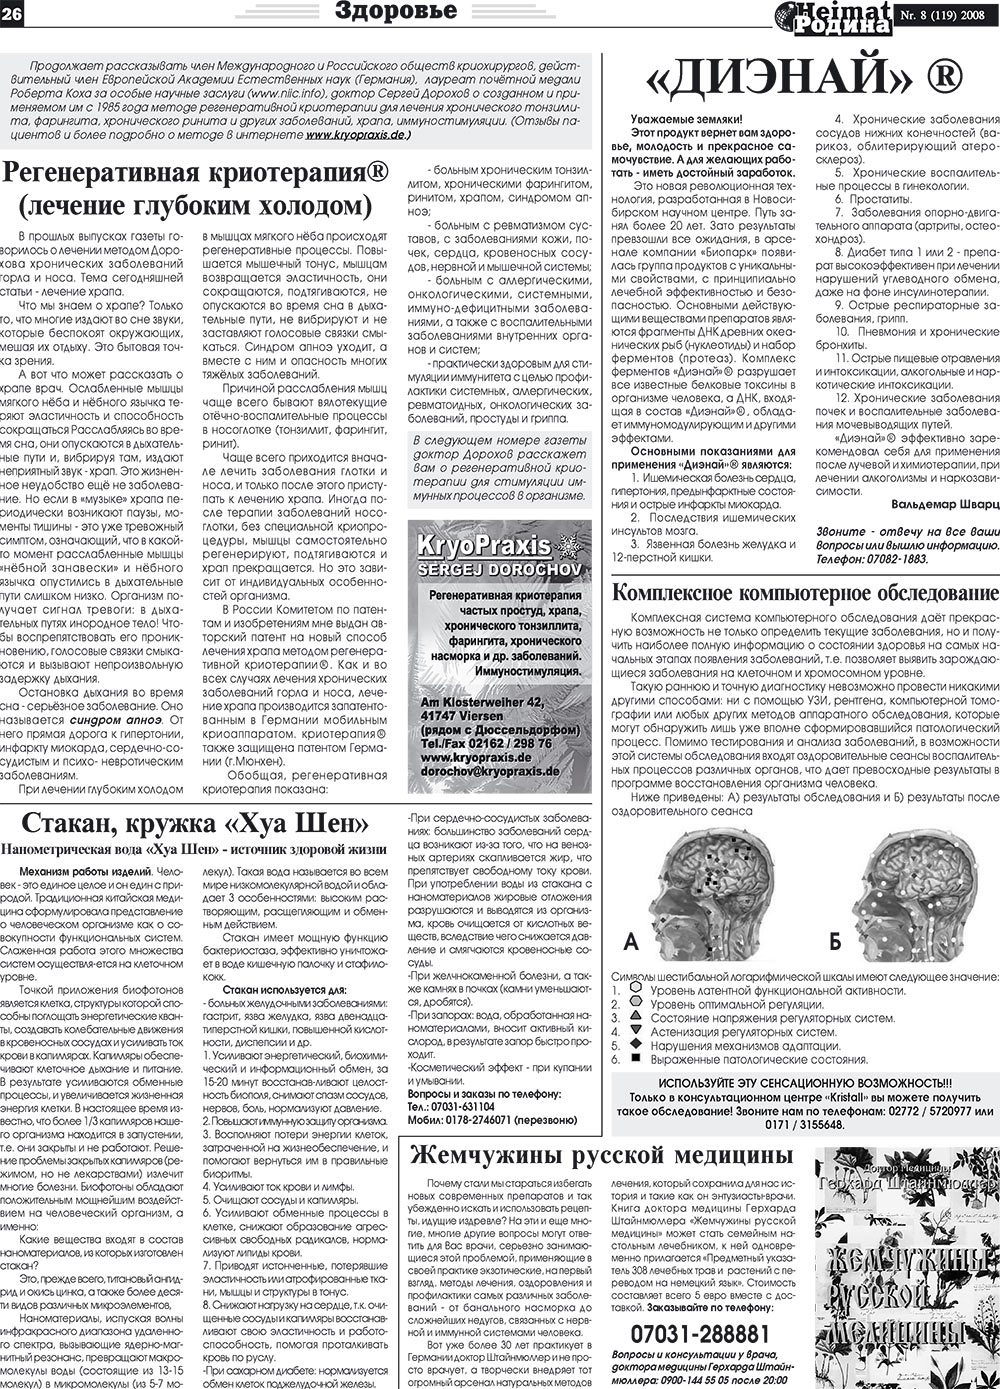 Heimat-Родина (газета). 2008 год, номер 8, стр. 26